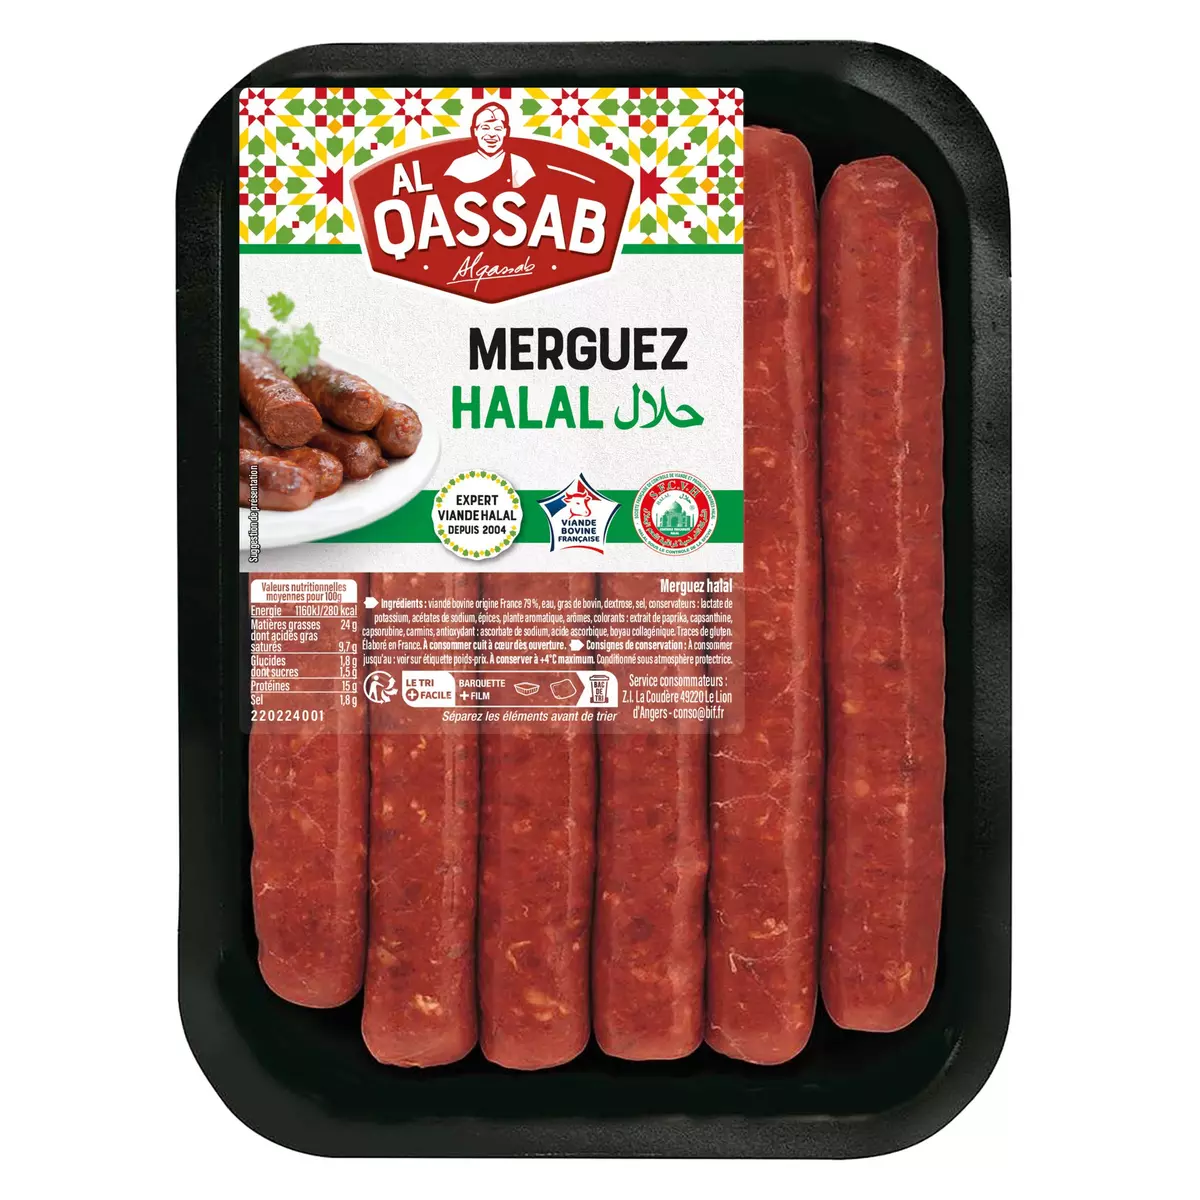 AL QASSAB Merguez halal 6 pièces 330g